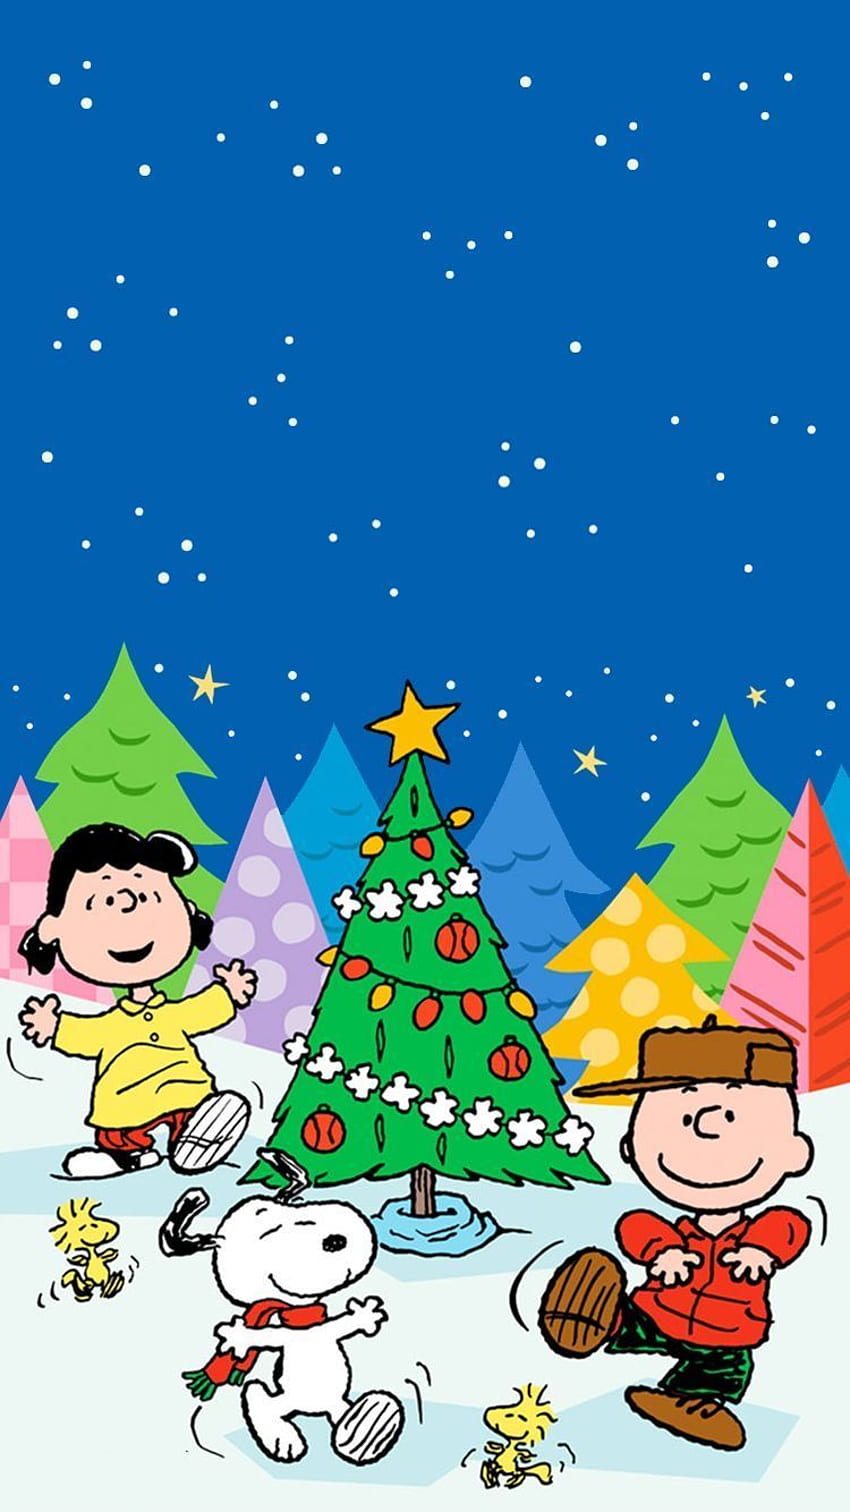 Hãy đón xem hình nền Snoopy đầy lễ hội Giáng Sinh để cảm nhận một không khí hào hứng và ấm áp tràn đầy trong ngày đặc biệt này!